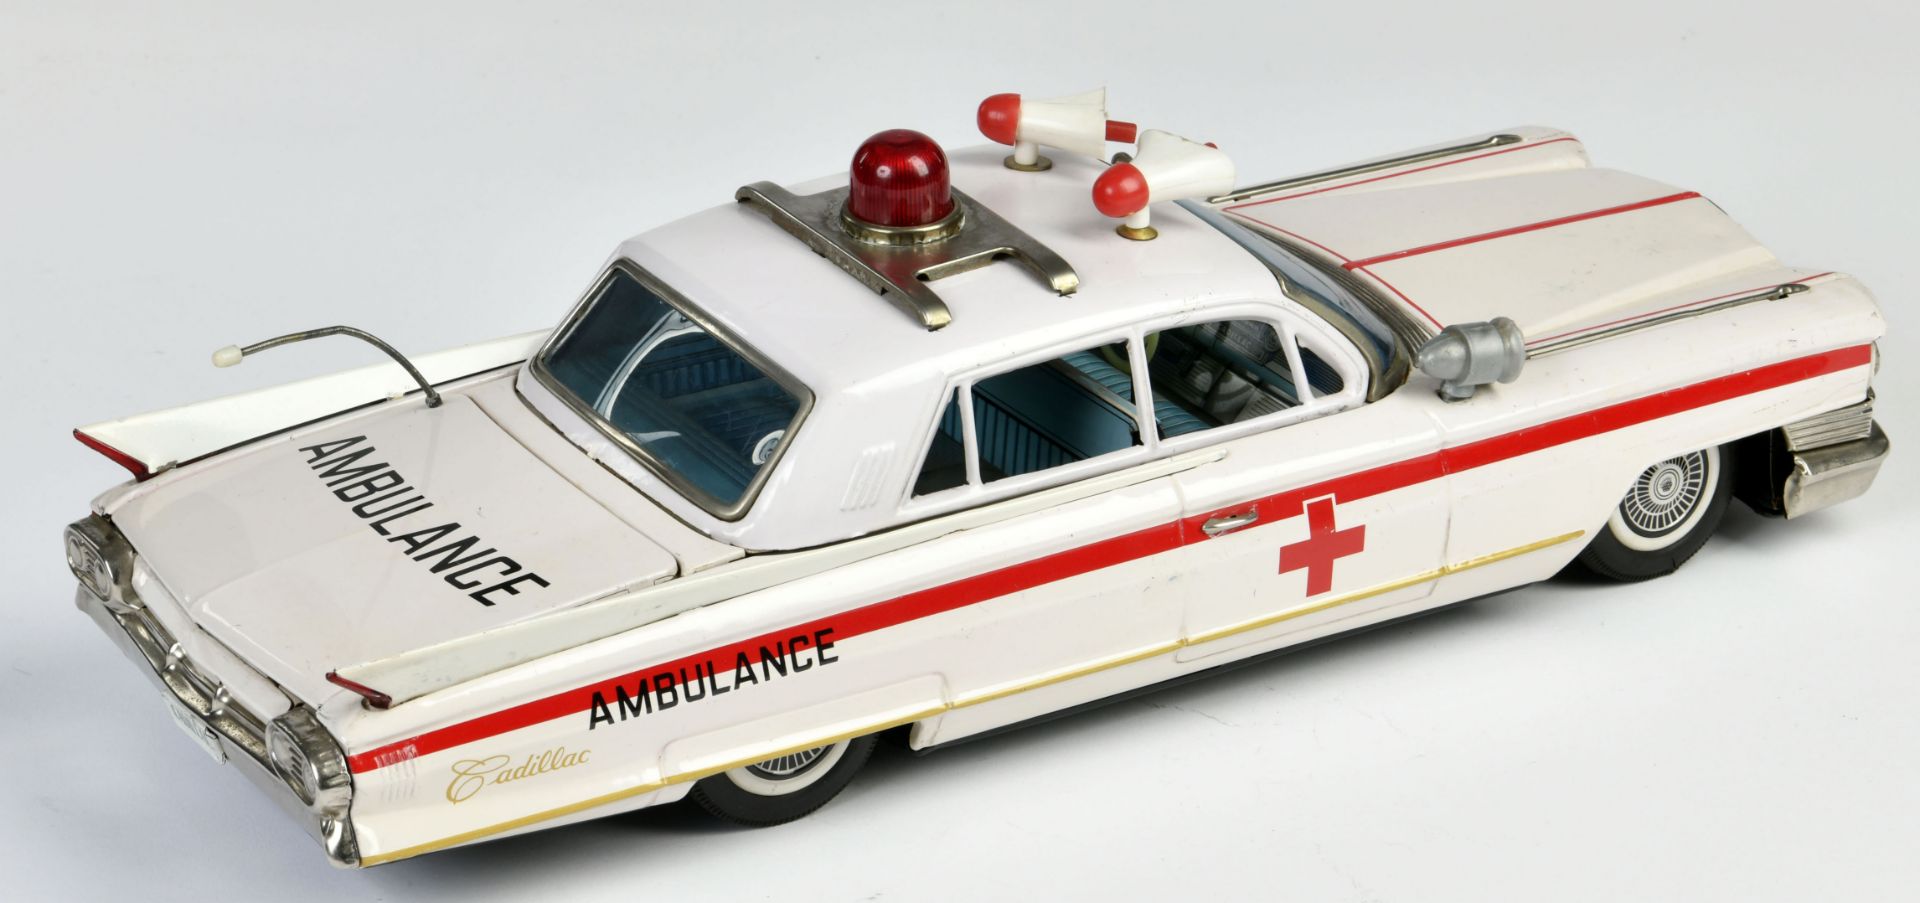 Bandai, Cadillac Ambulance, Japan, 43 cm, tin, friction ok, C 1-2 - Image 2 of 3